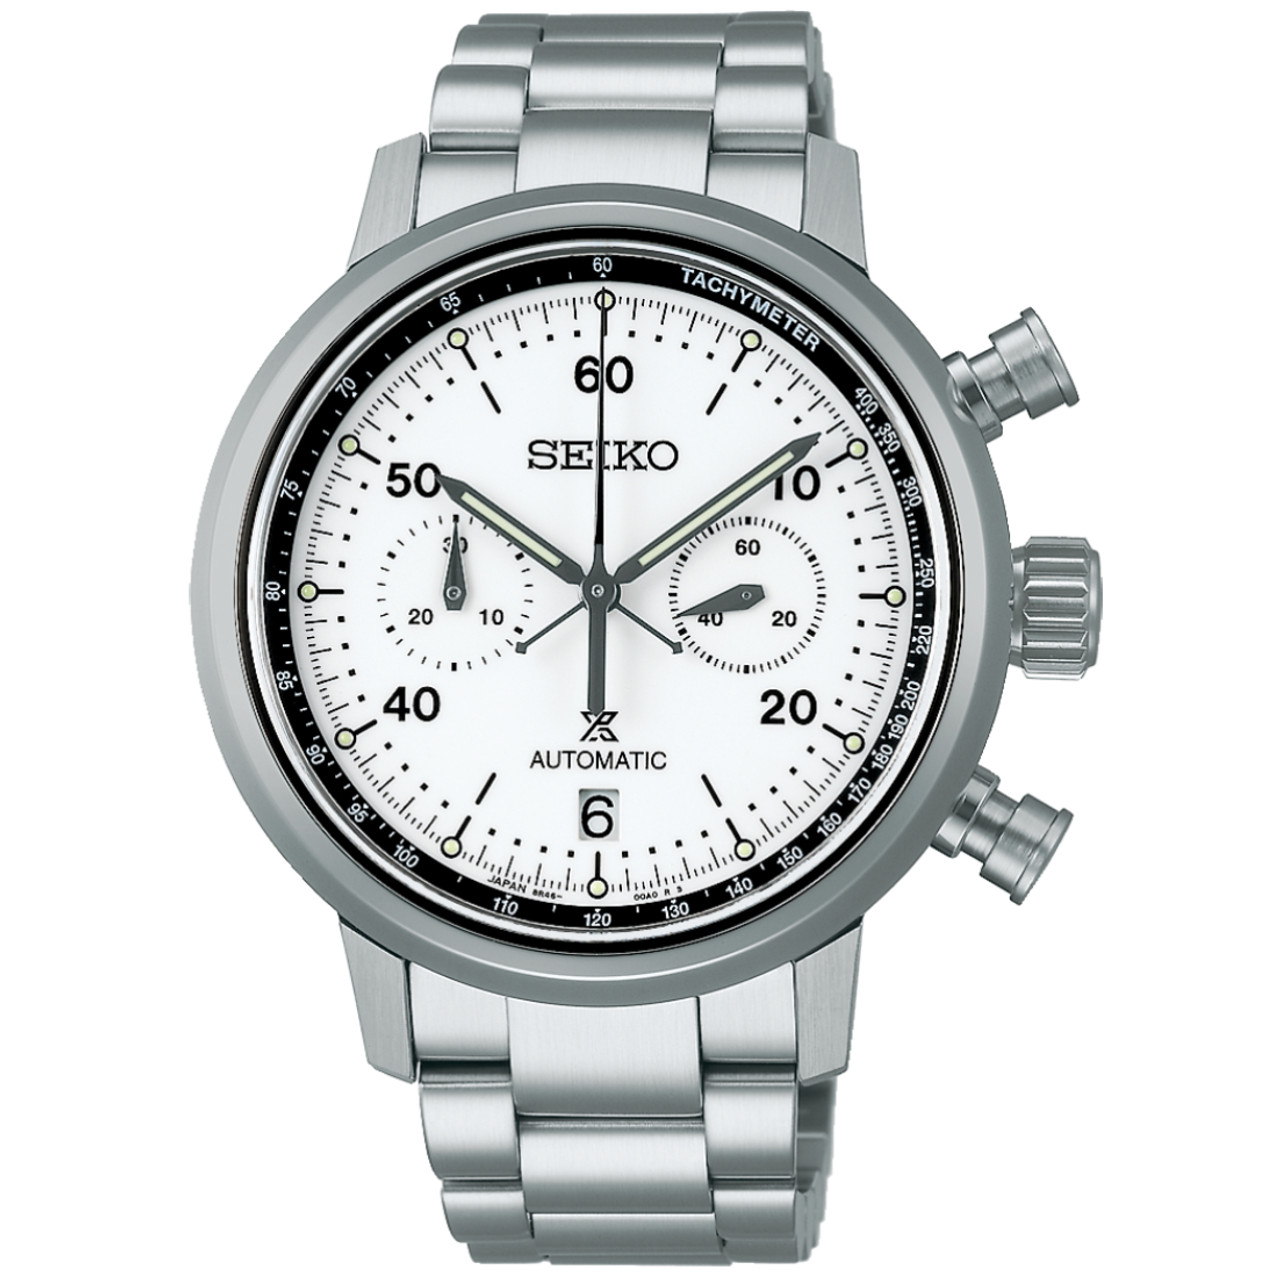 Seiko Prospex Speedtimer Reissue Limited Edition Watch SRQ035J1